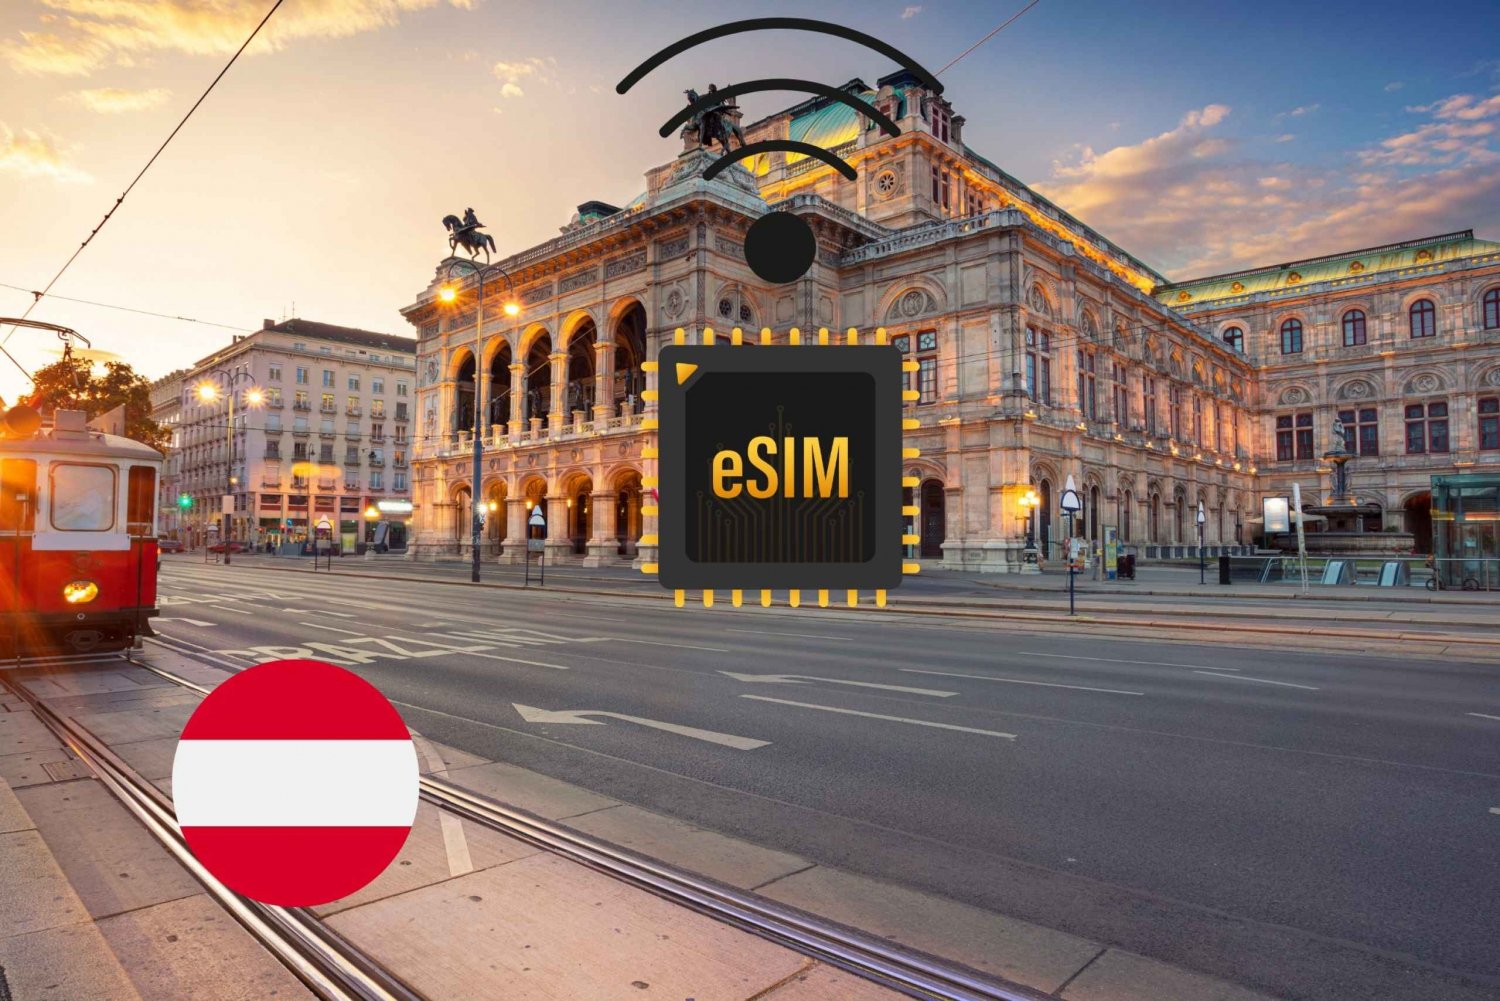 Wenen : eSIM Internet Data Plan Oostenrijk hoge snelheid 4G/5G